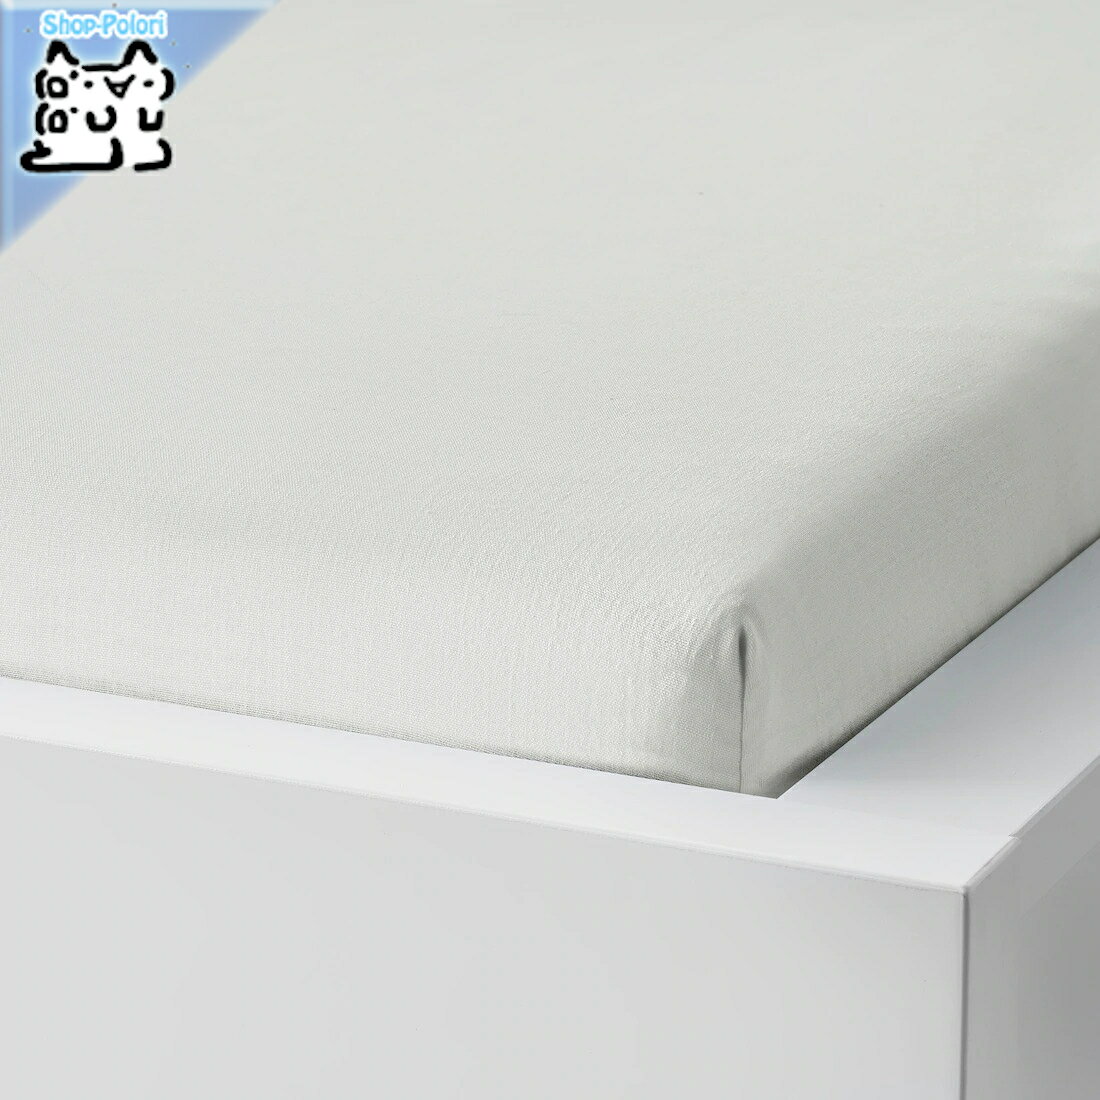 【IKEA -イケア-】TAGGVALLMO -タッグヴァッルモ- ボックスシーツ ホワイト シングルサイズ 90x200 cm (904.598.19) 1